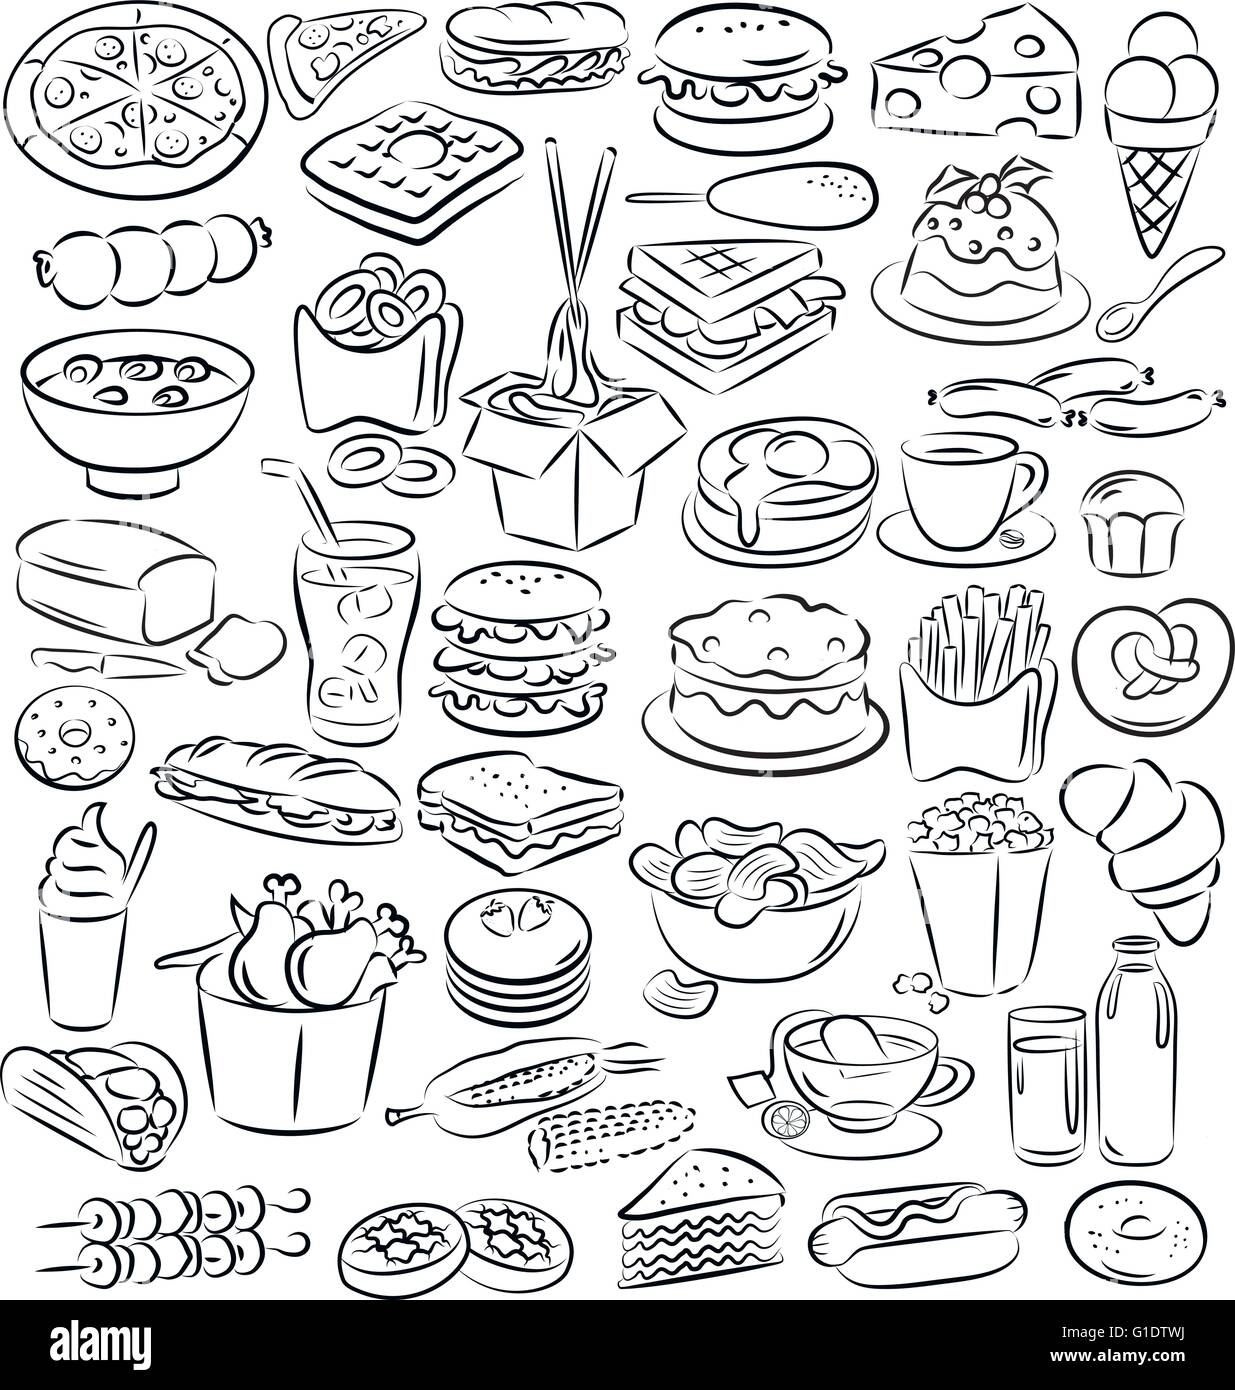 Vektor-Illustration von Essen und trinken Sammlung im Linienmodus Kunst Stock Vektor